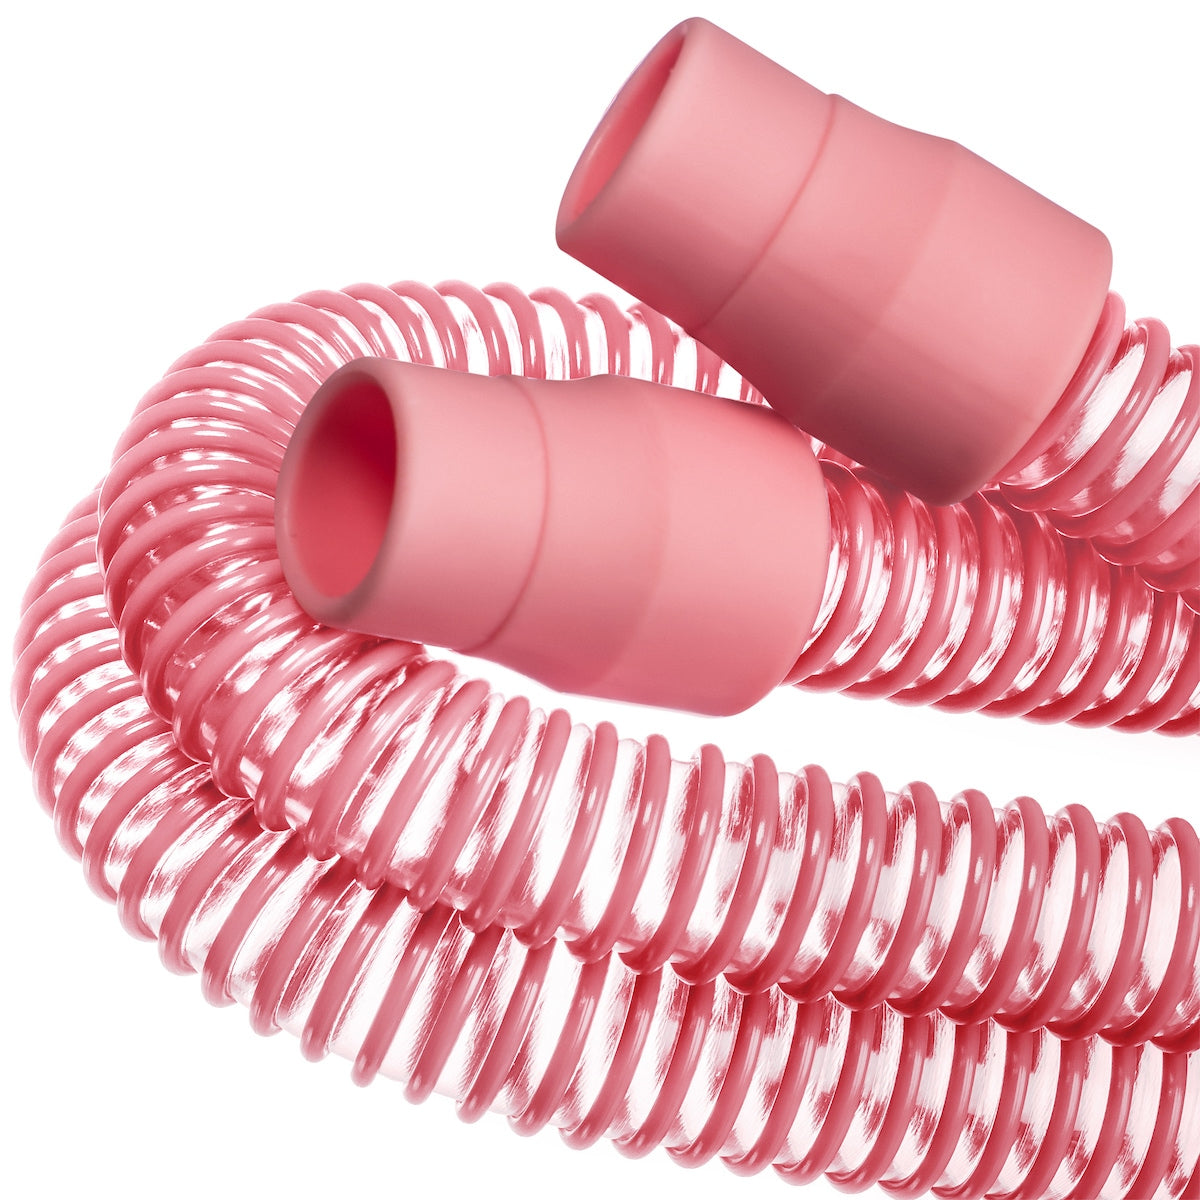 3B Pink Pearl CPAP/BiPAP Hose Tubing (6-Foot)